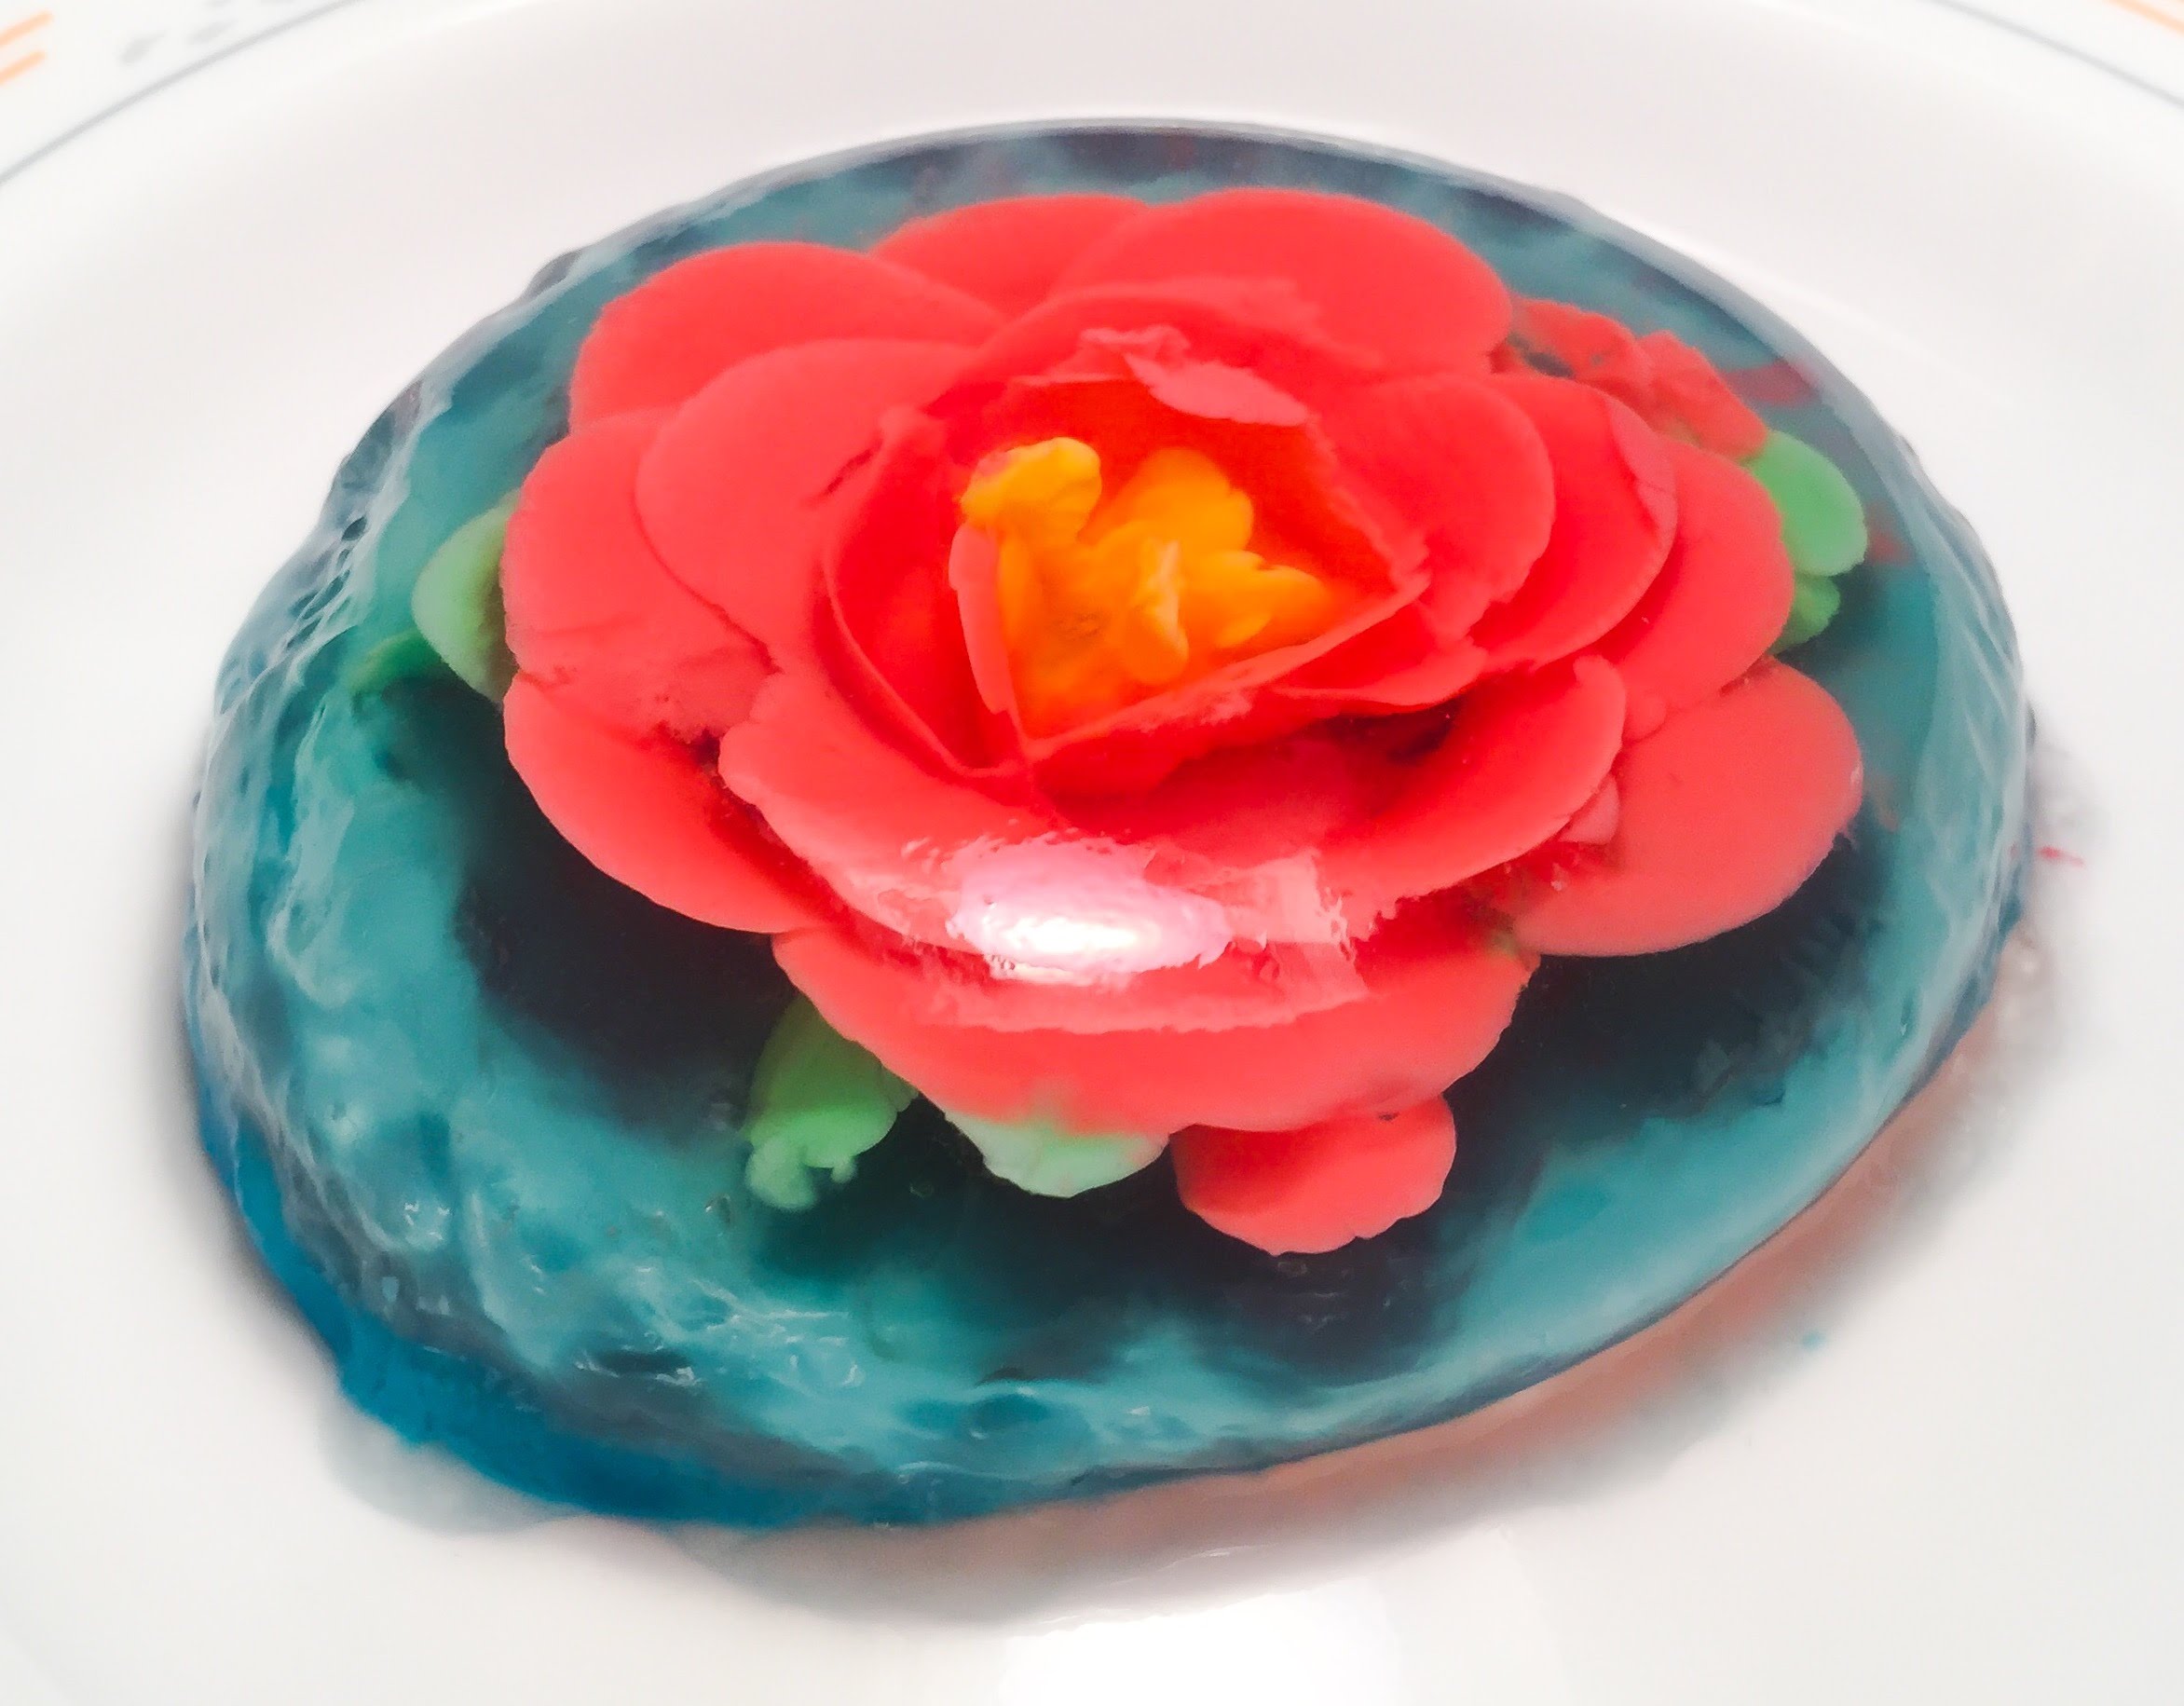 3D Flower Gelatin Dessert / Gelatina Floral - YouTube